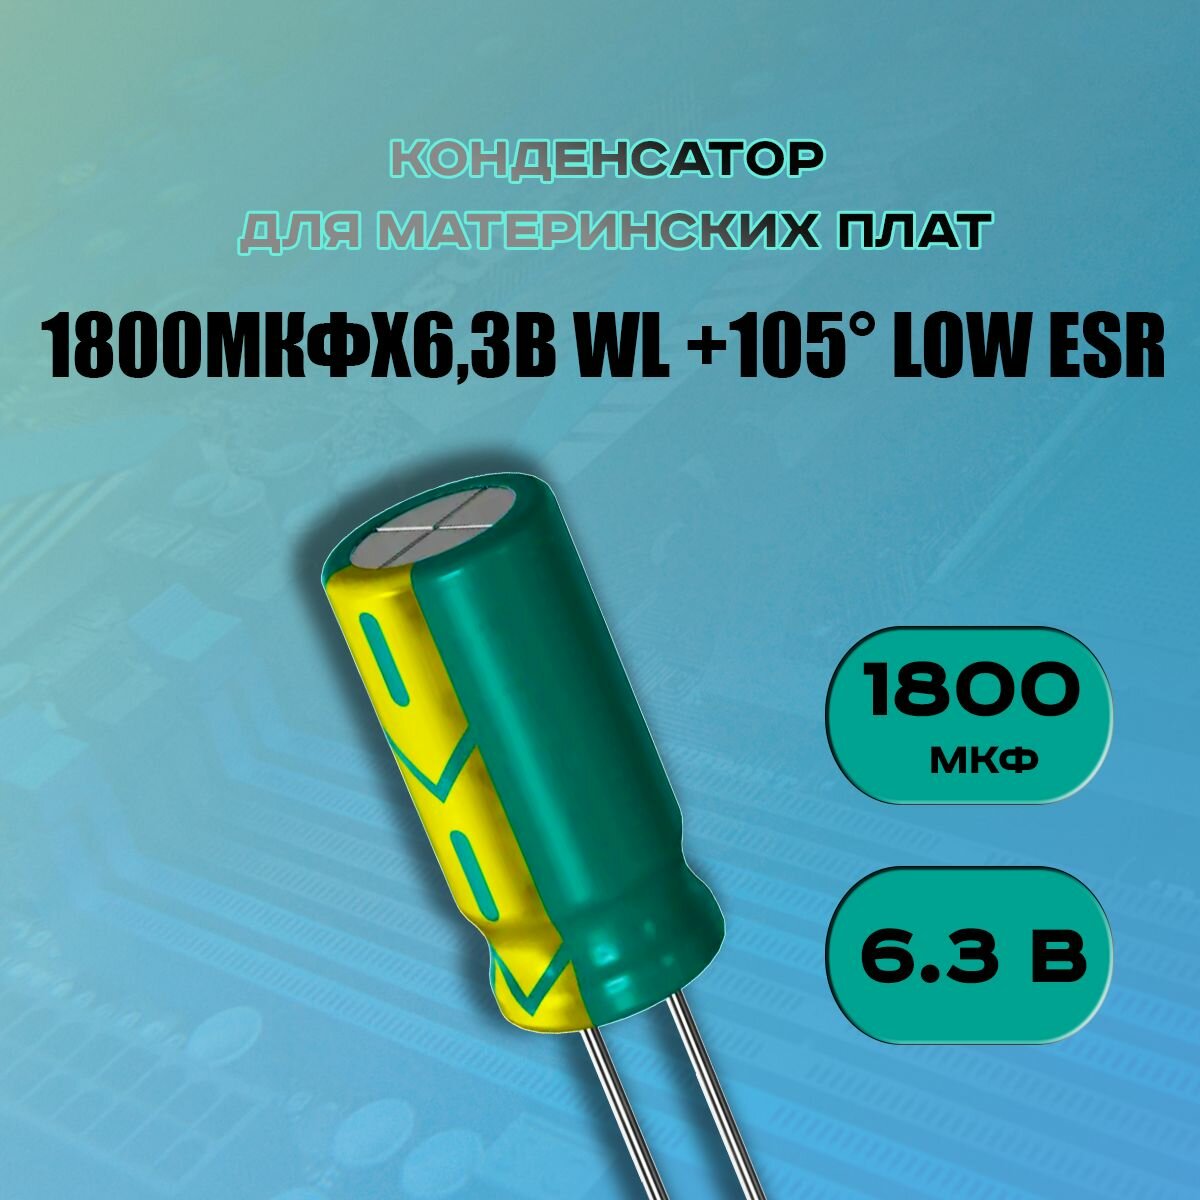 Конденсатор для материнской платы 1800 микрофарат 6.3 Вольт (1500uf 6.3V WL +105 LOW ESR) - 50 шт.